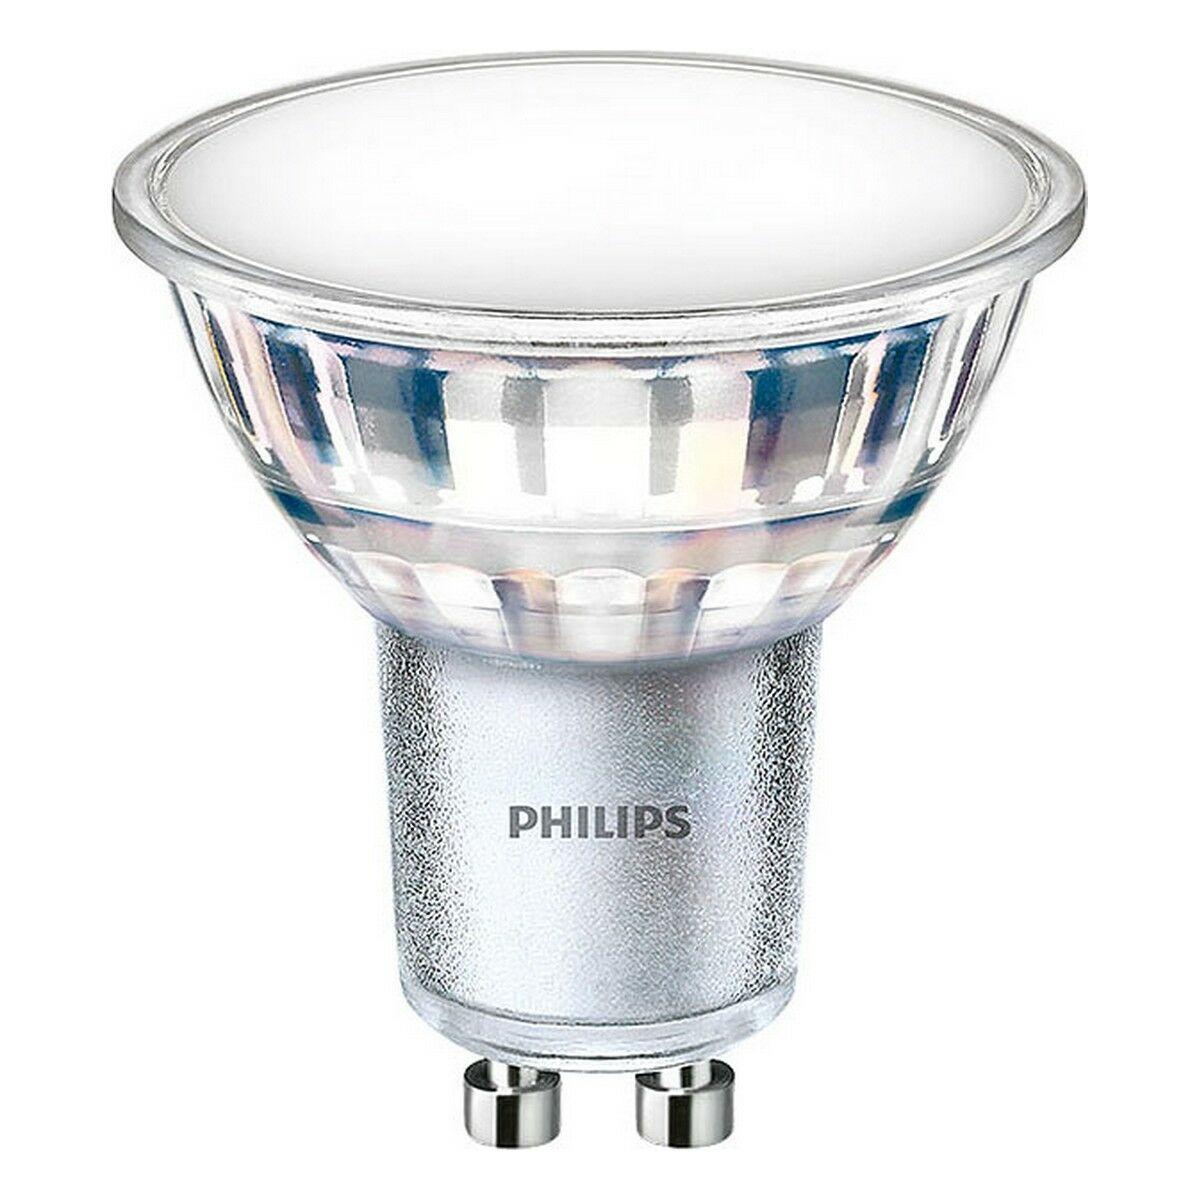 Billede af LED-lampe Philips 4,9 W GU10 550 lm (3000 K) hos Boligcenter.dk